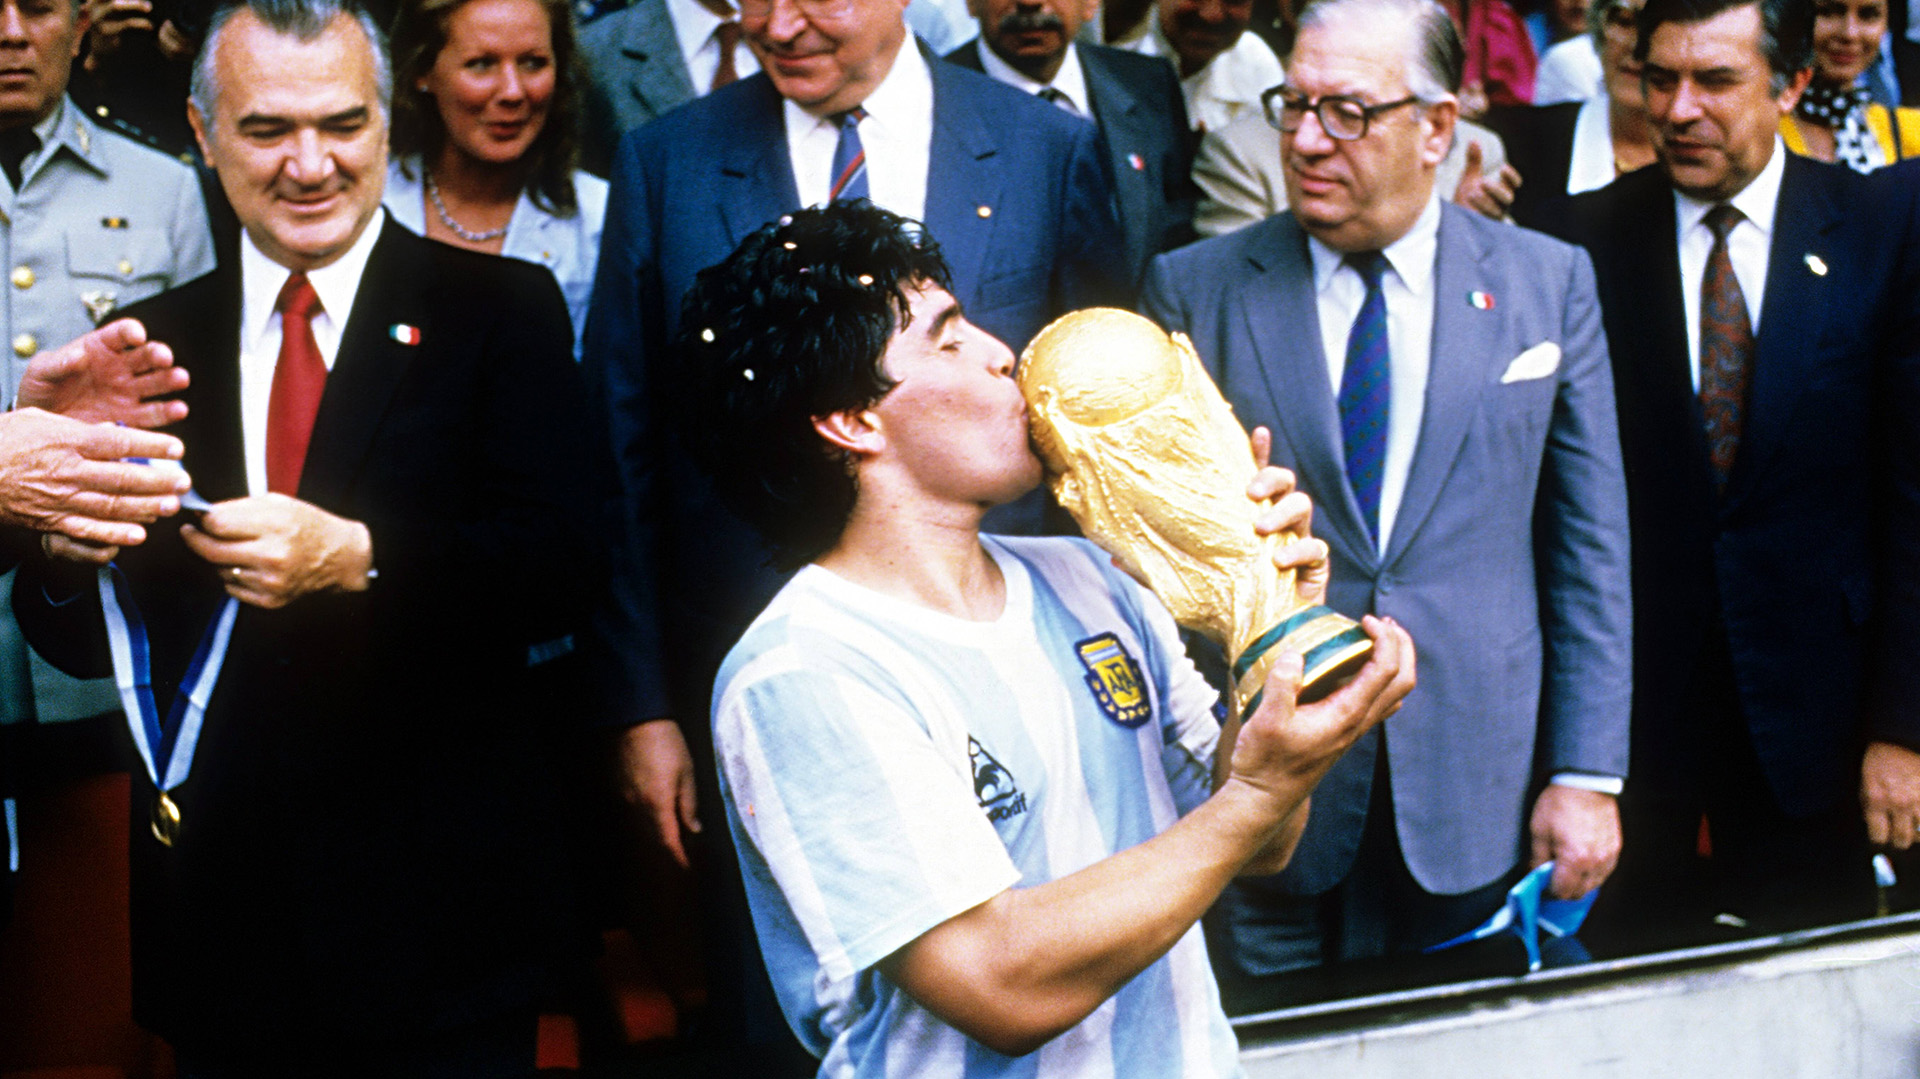 El análisis de un profesor de Harvard: “Maradona fue el más imperfecto de los dioses humanos”